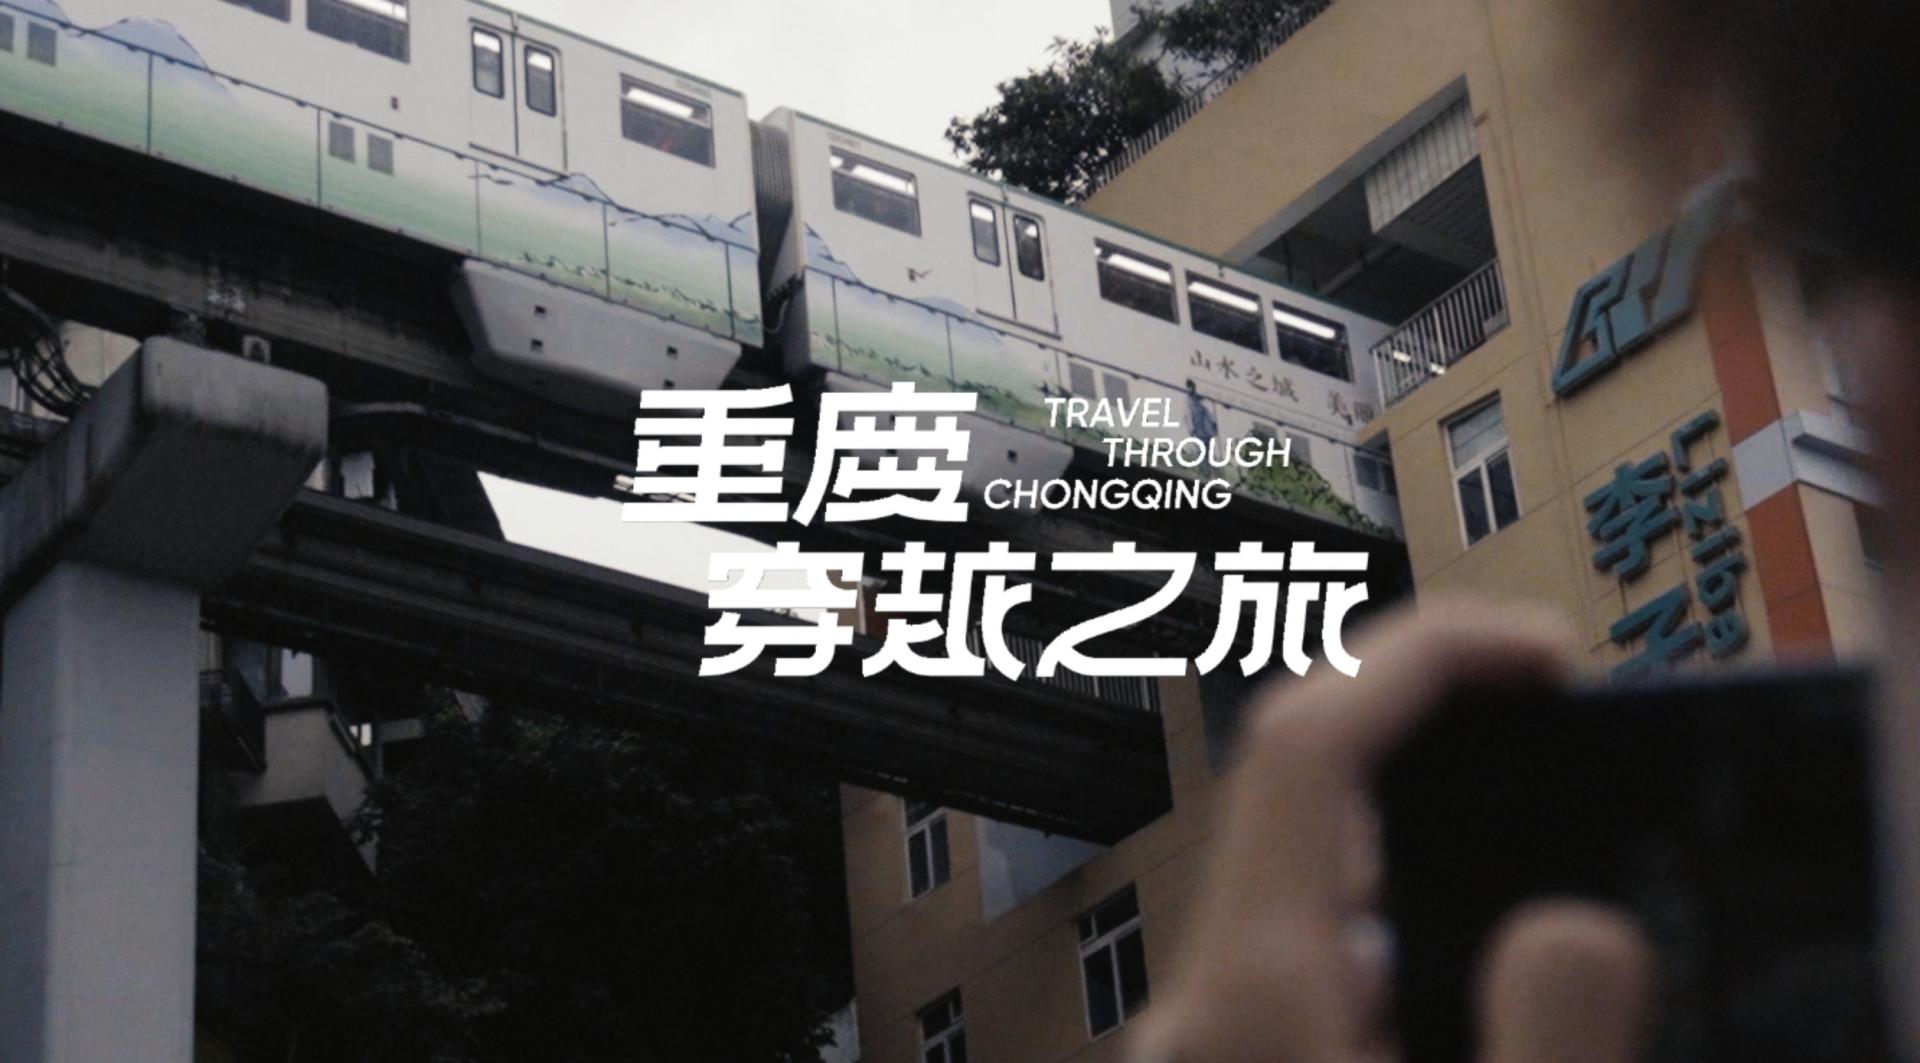 重庆旅拍短片丨重庆穿越之旅Travel through Chongqing